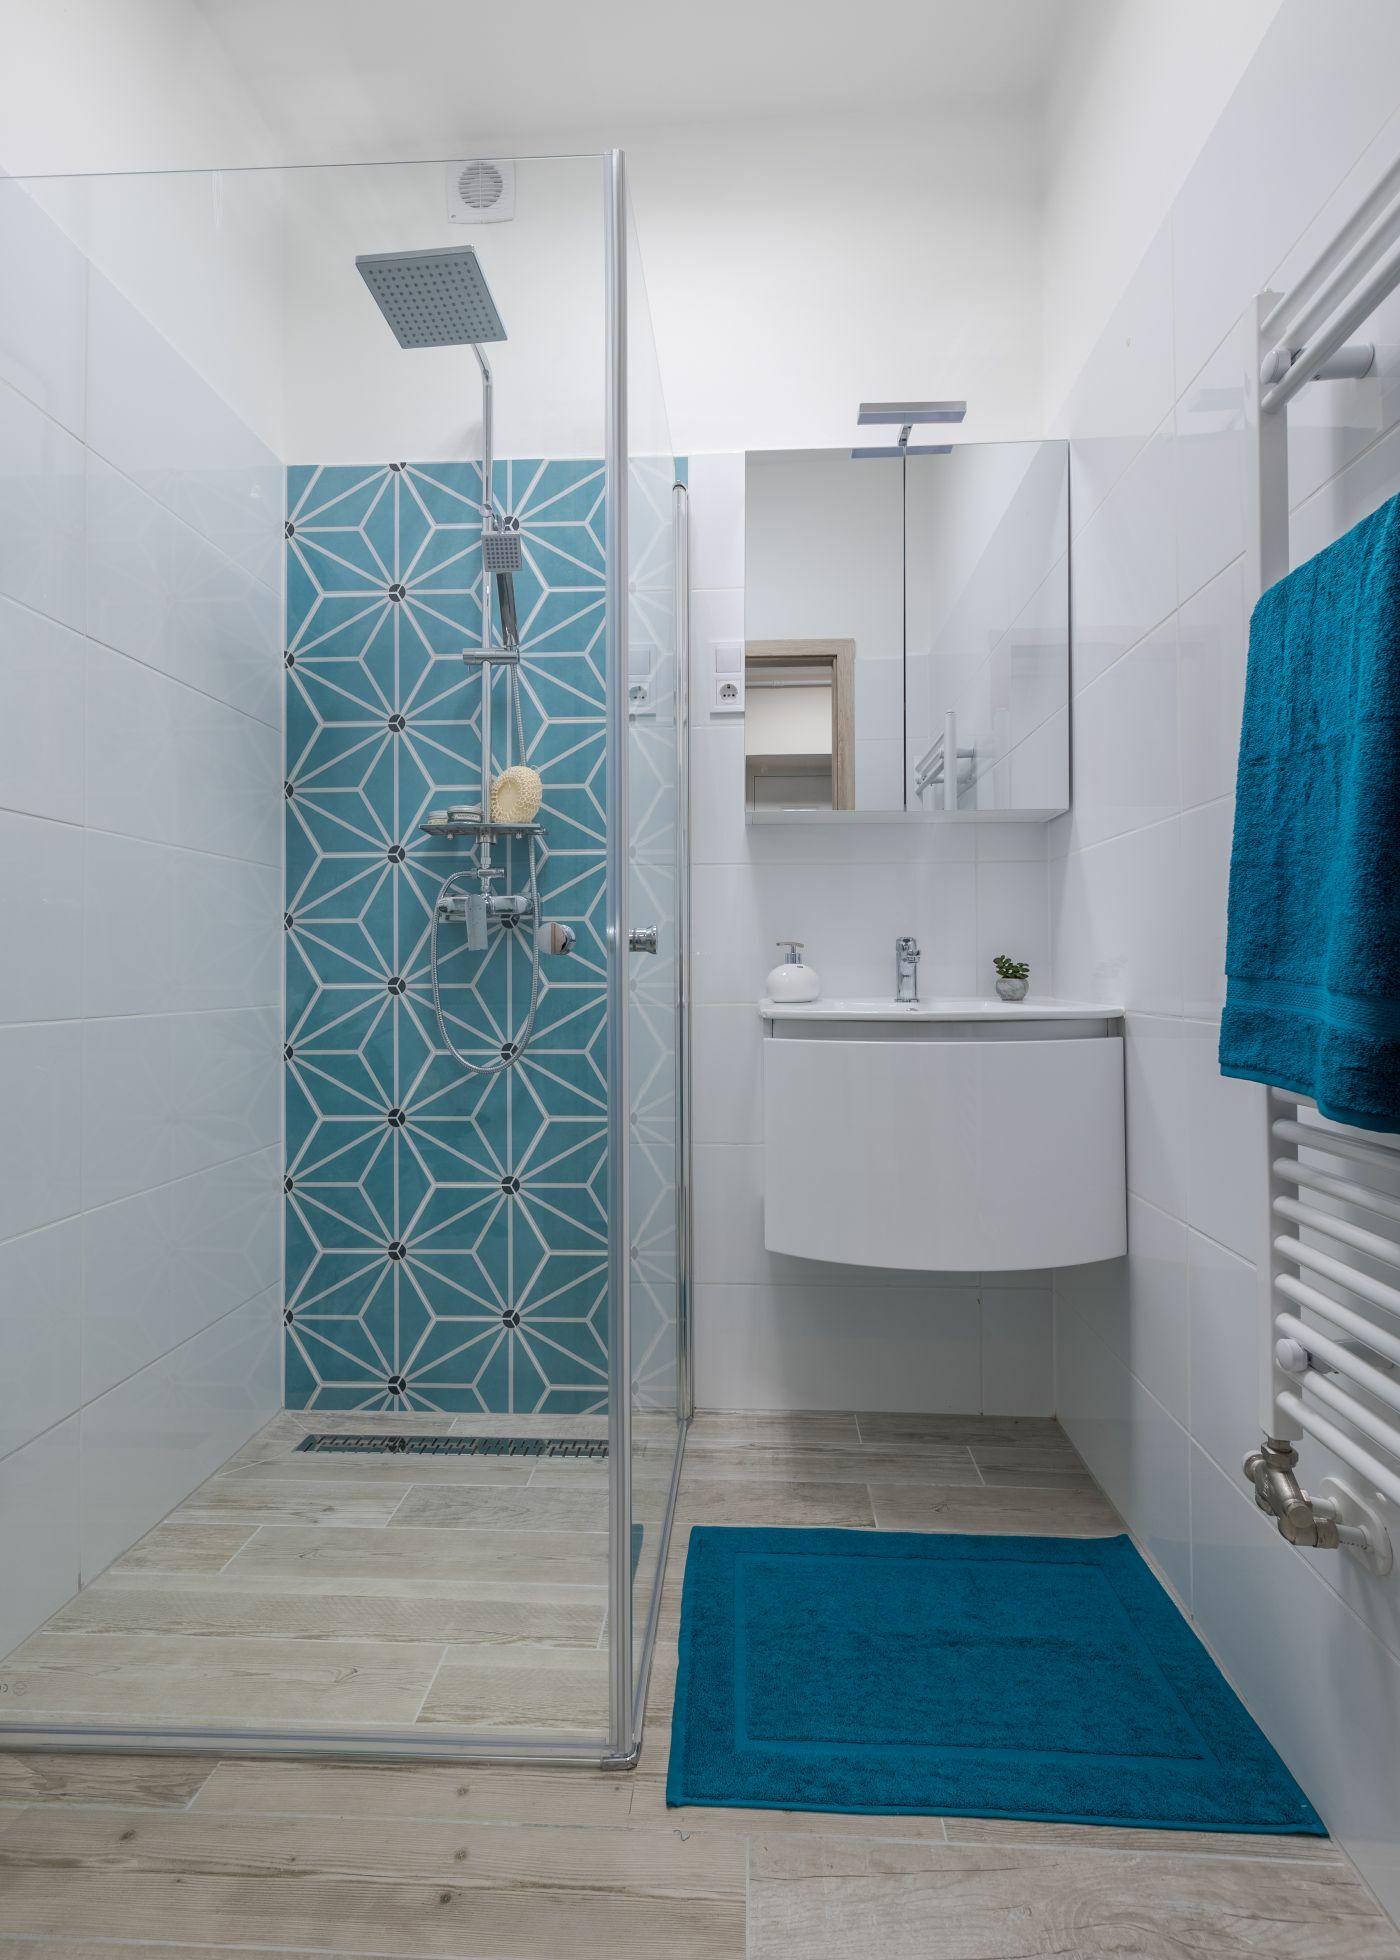 Fahatású lapok és türkiz geometrikus lapok adnak friss és modern hangulatot a fürdőszobának